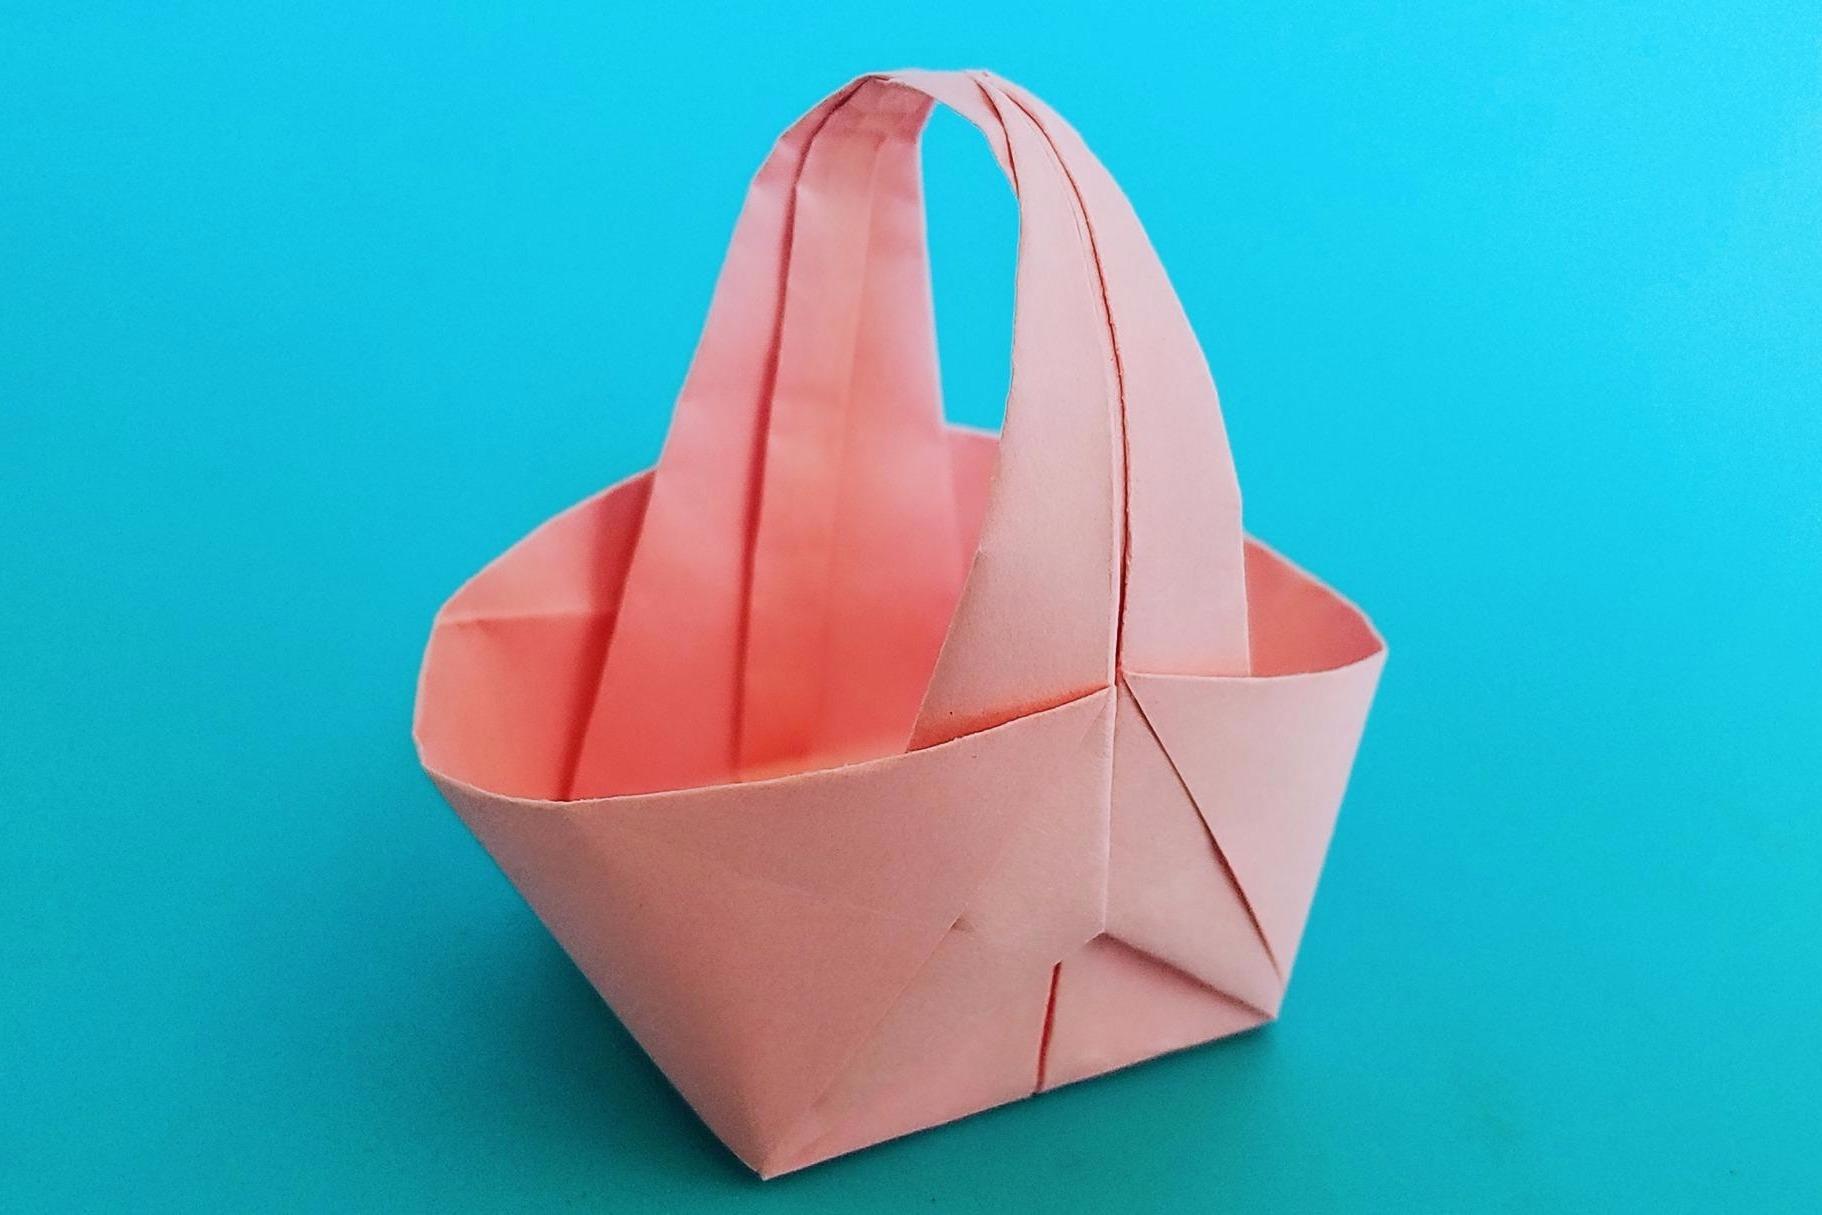 视频:折纸王子教你折纸菜篮子,简单又漂亮,做装饰很美观